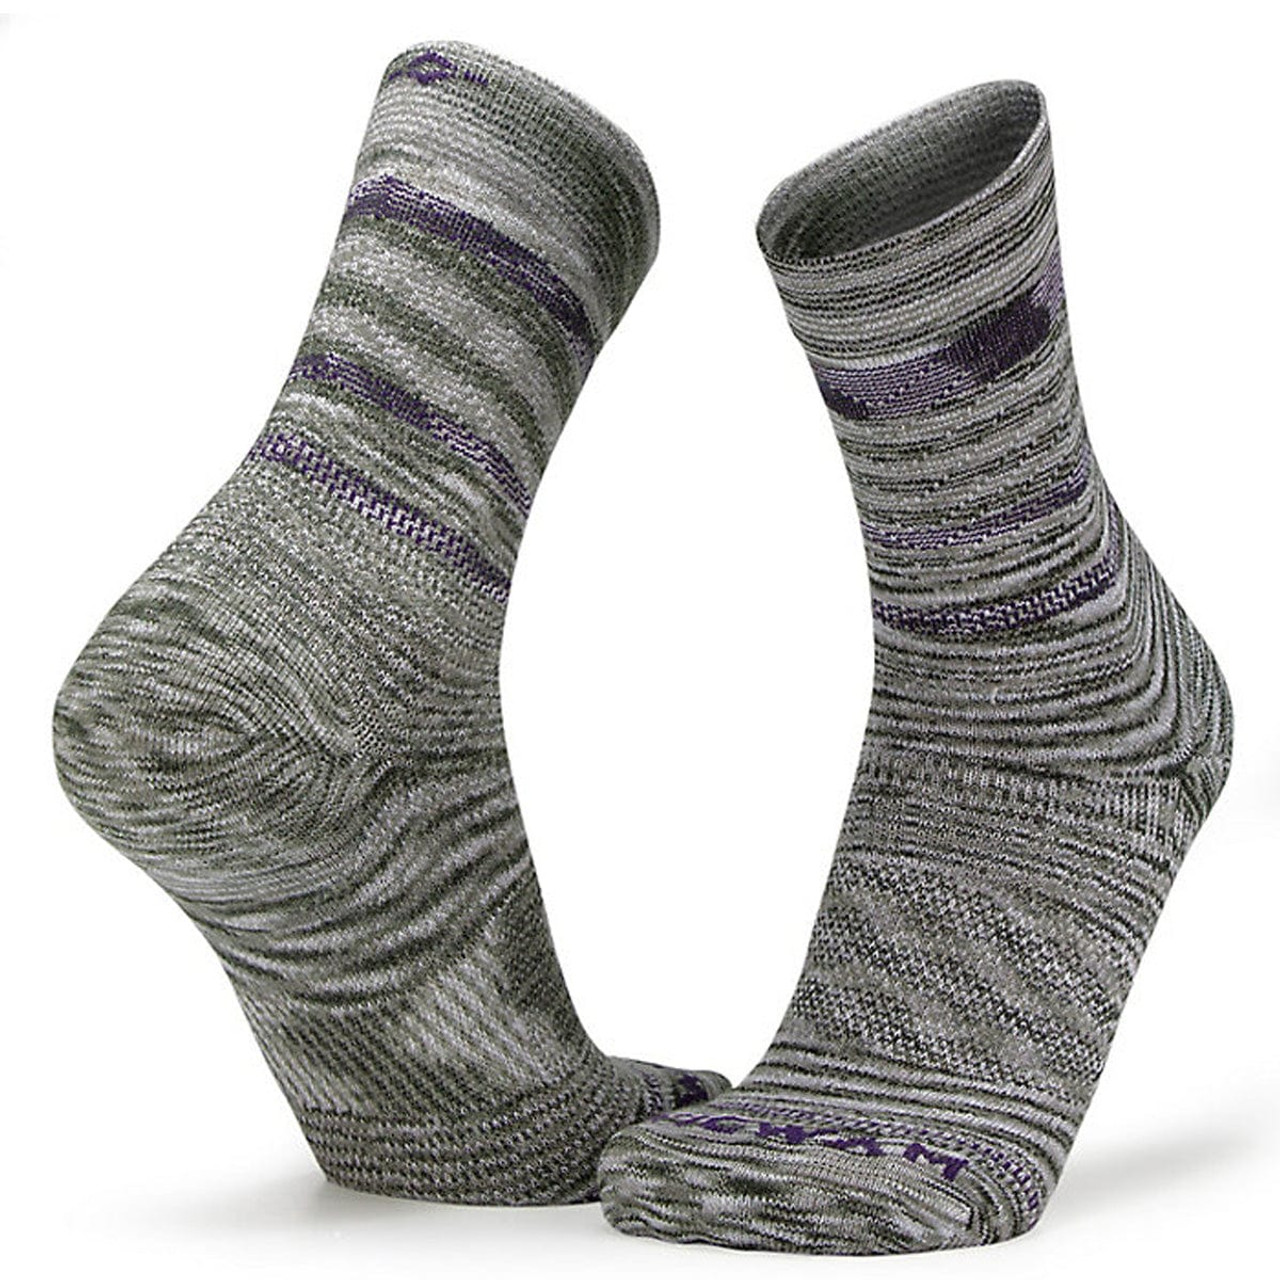 Men's Socks  Wigwam Socks